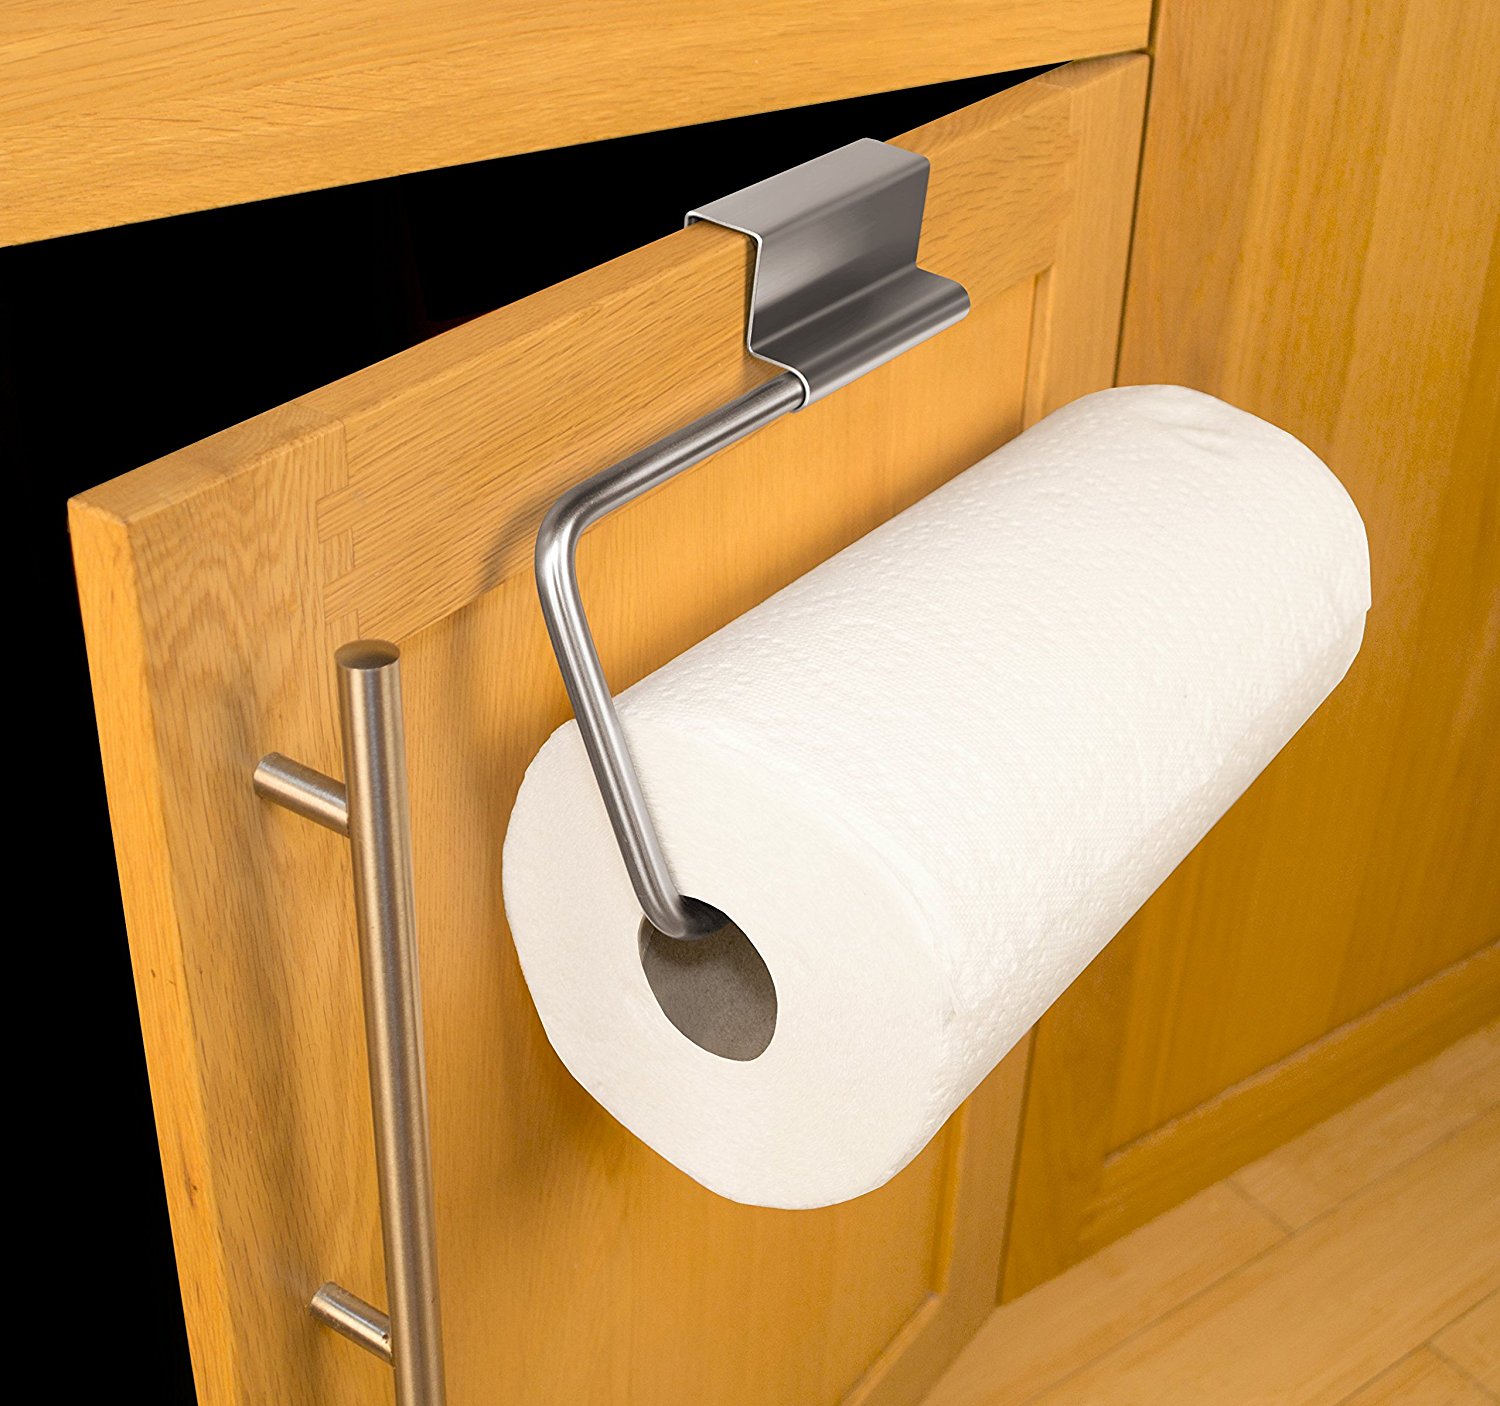 Top 10 Best Rv Paper Towel Holders Best Rv Reviews